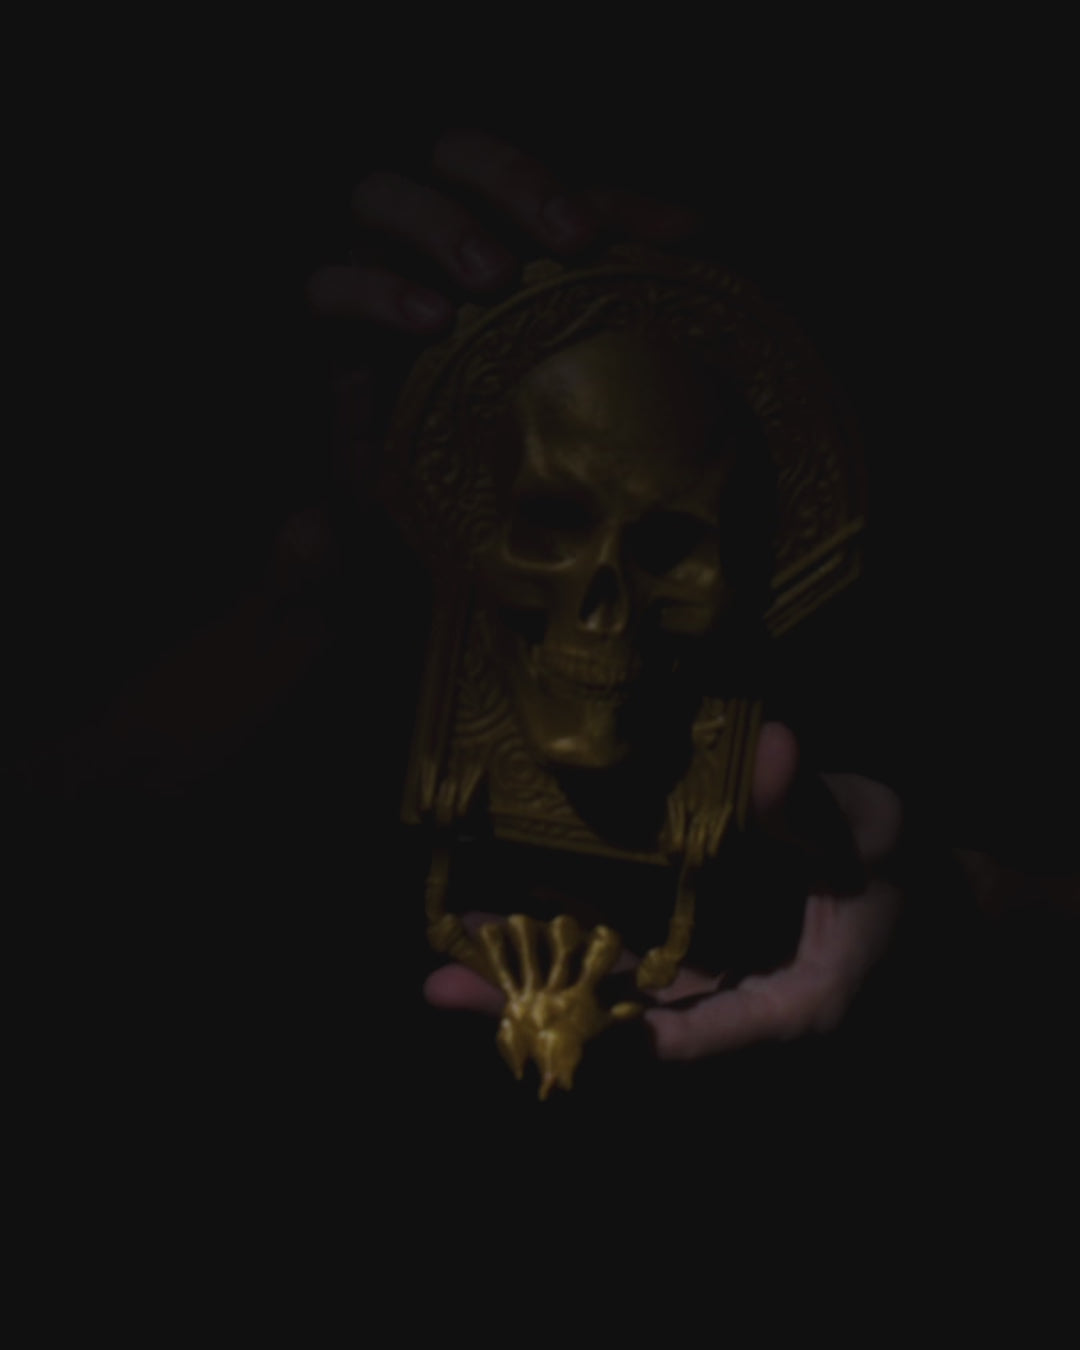 Skull Door Knocker | 3D Printer Model Files